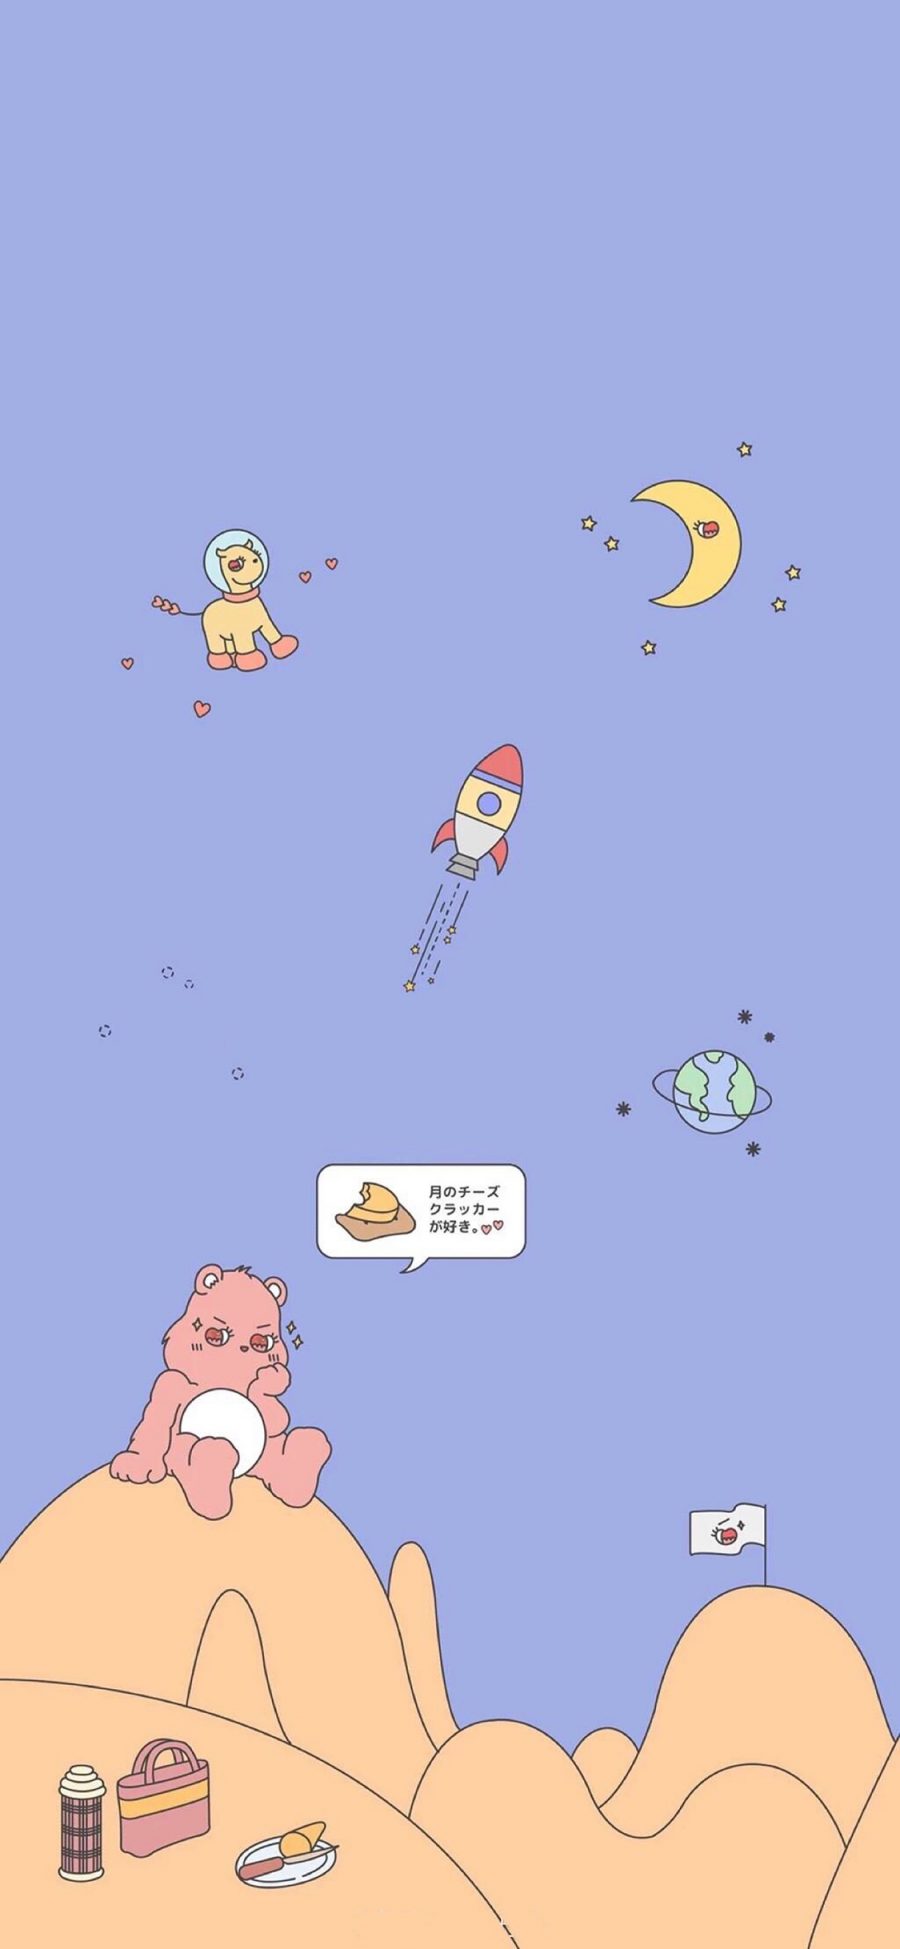 [2436×1125]卡通 小熊 月亮 火箭 苹果手机动漫壁纸图片